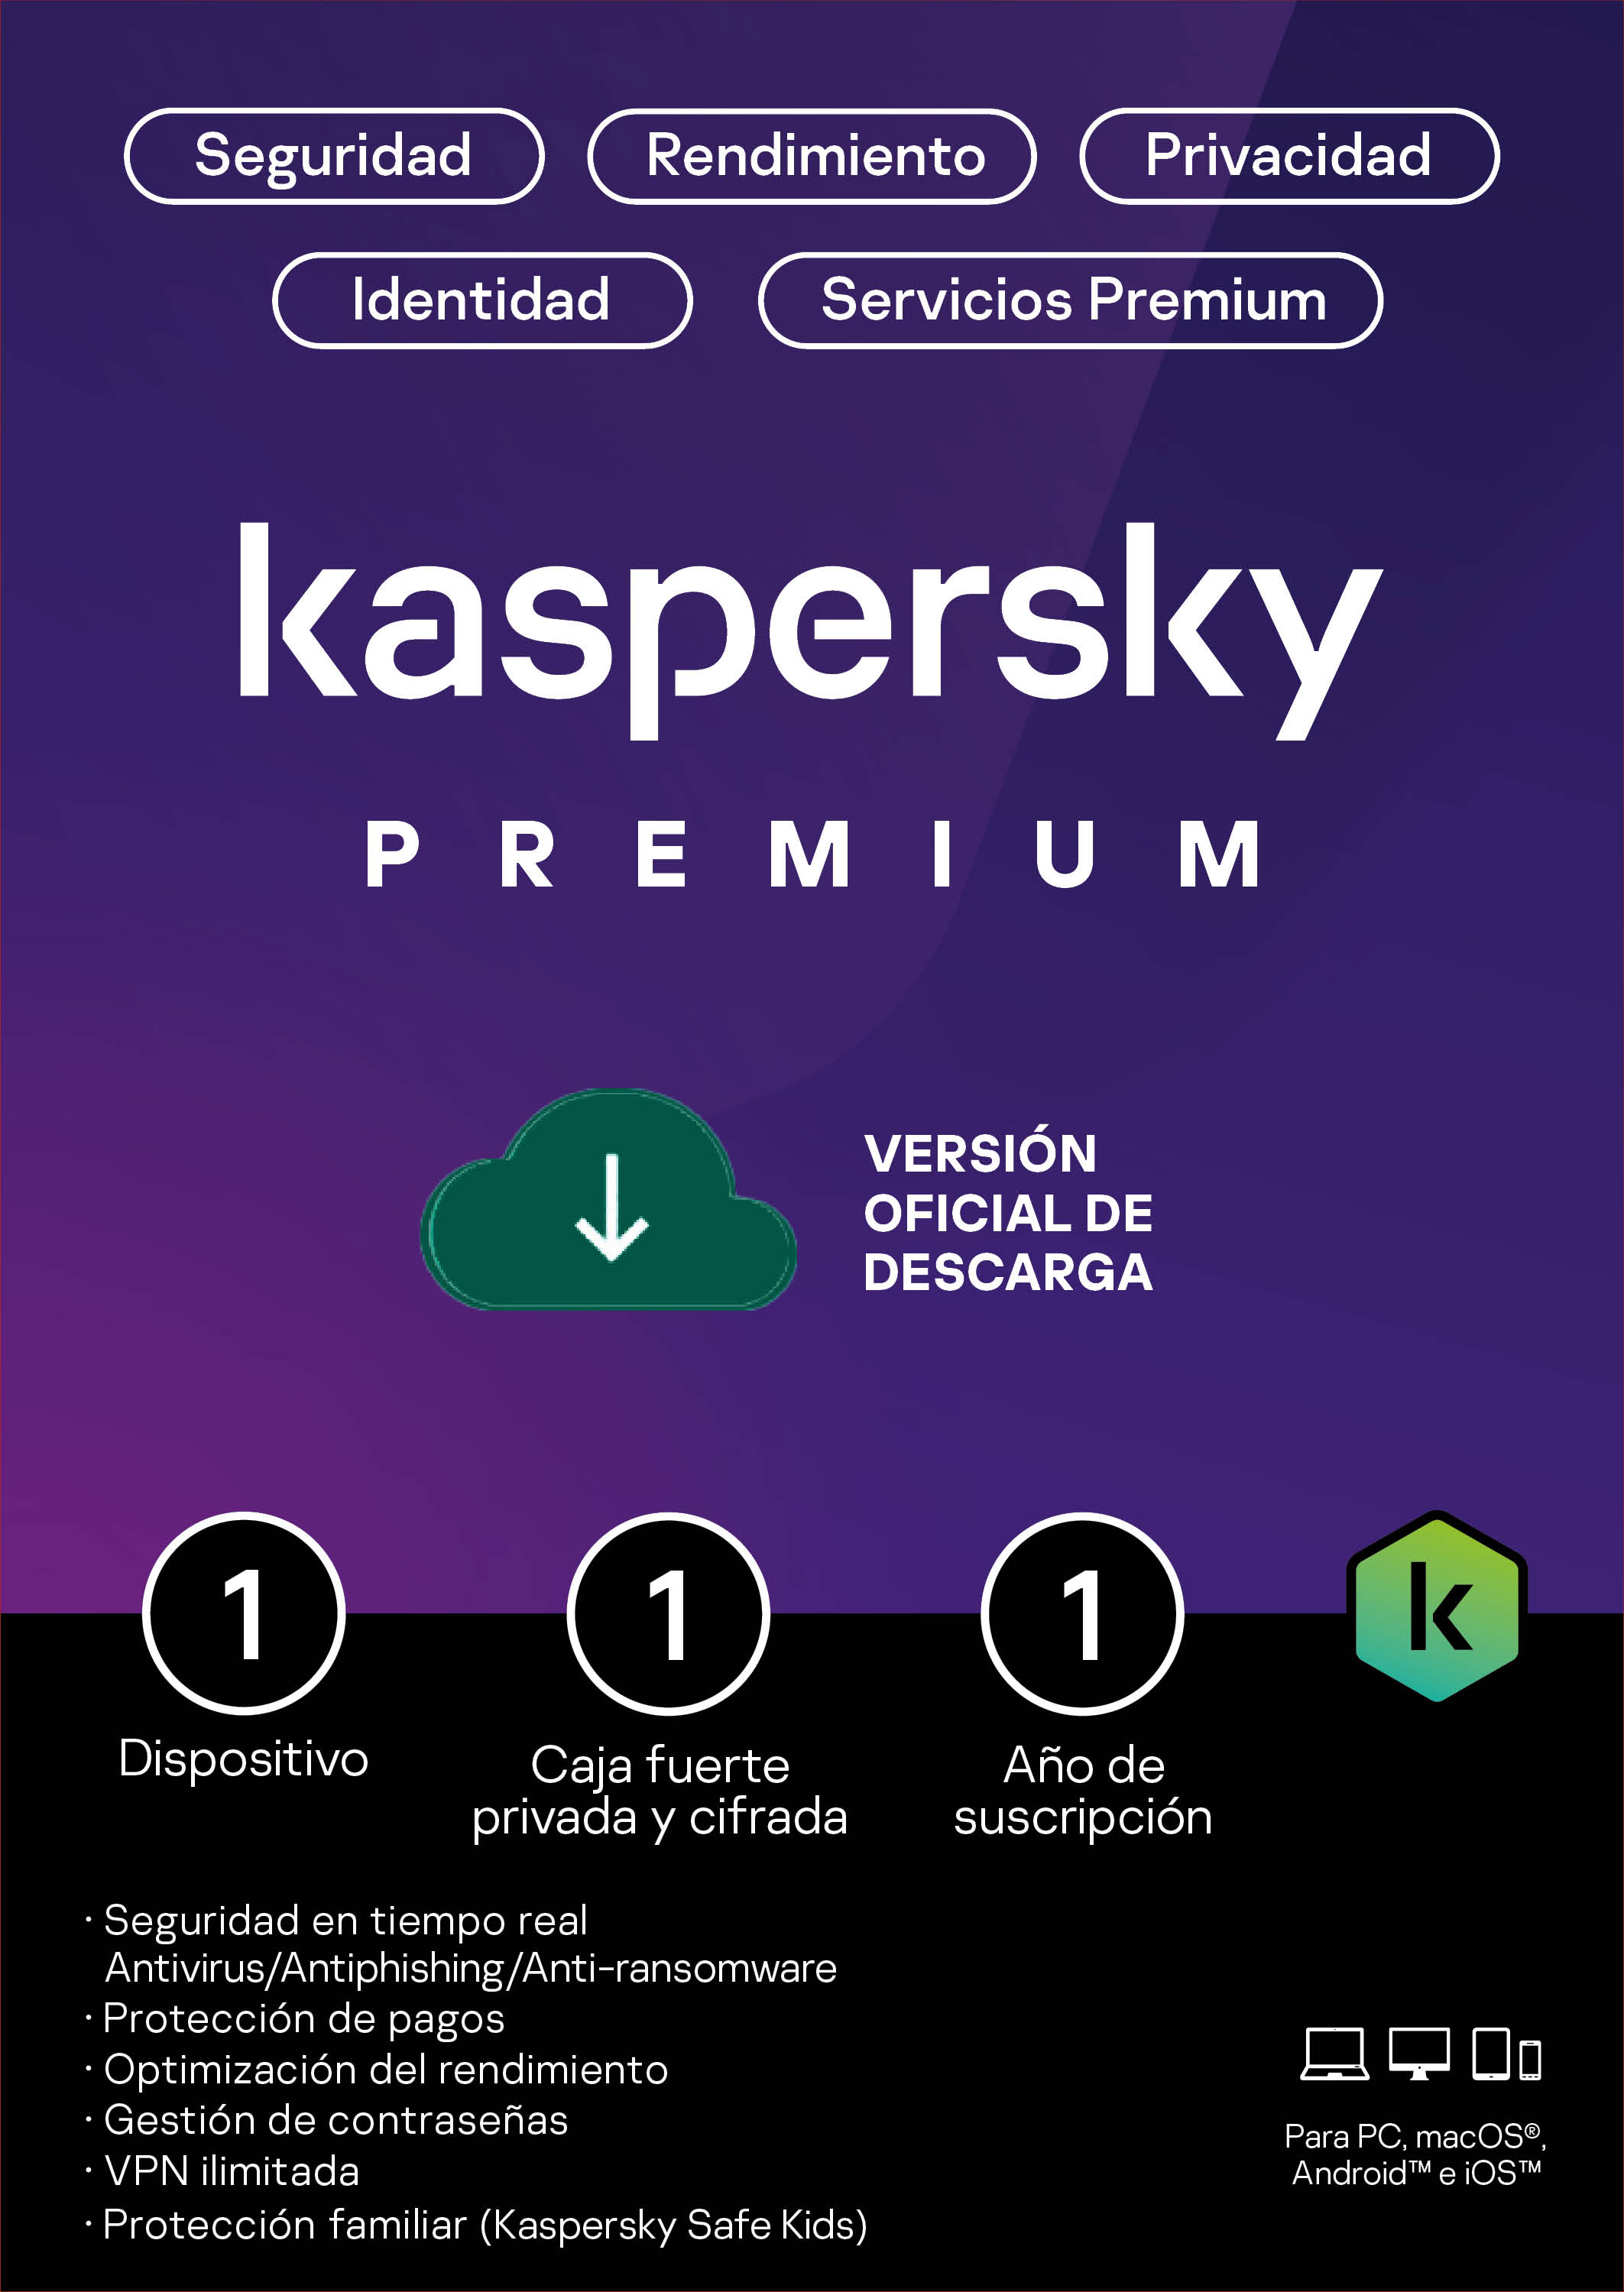 Licencia Kaspersky Premium 1 dispositivo por 1 año